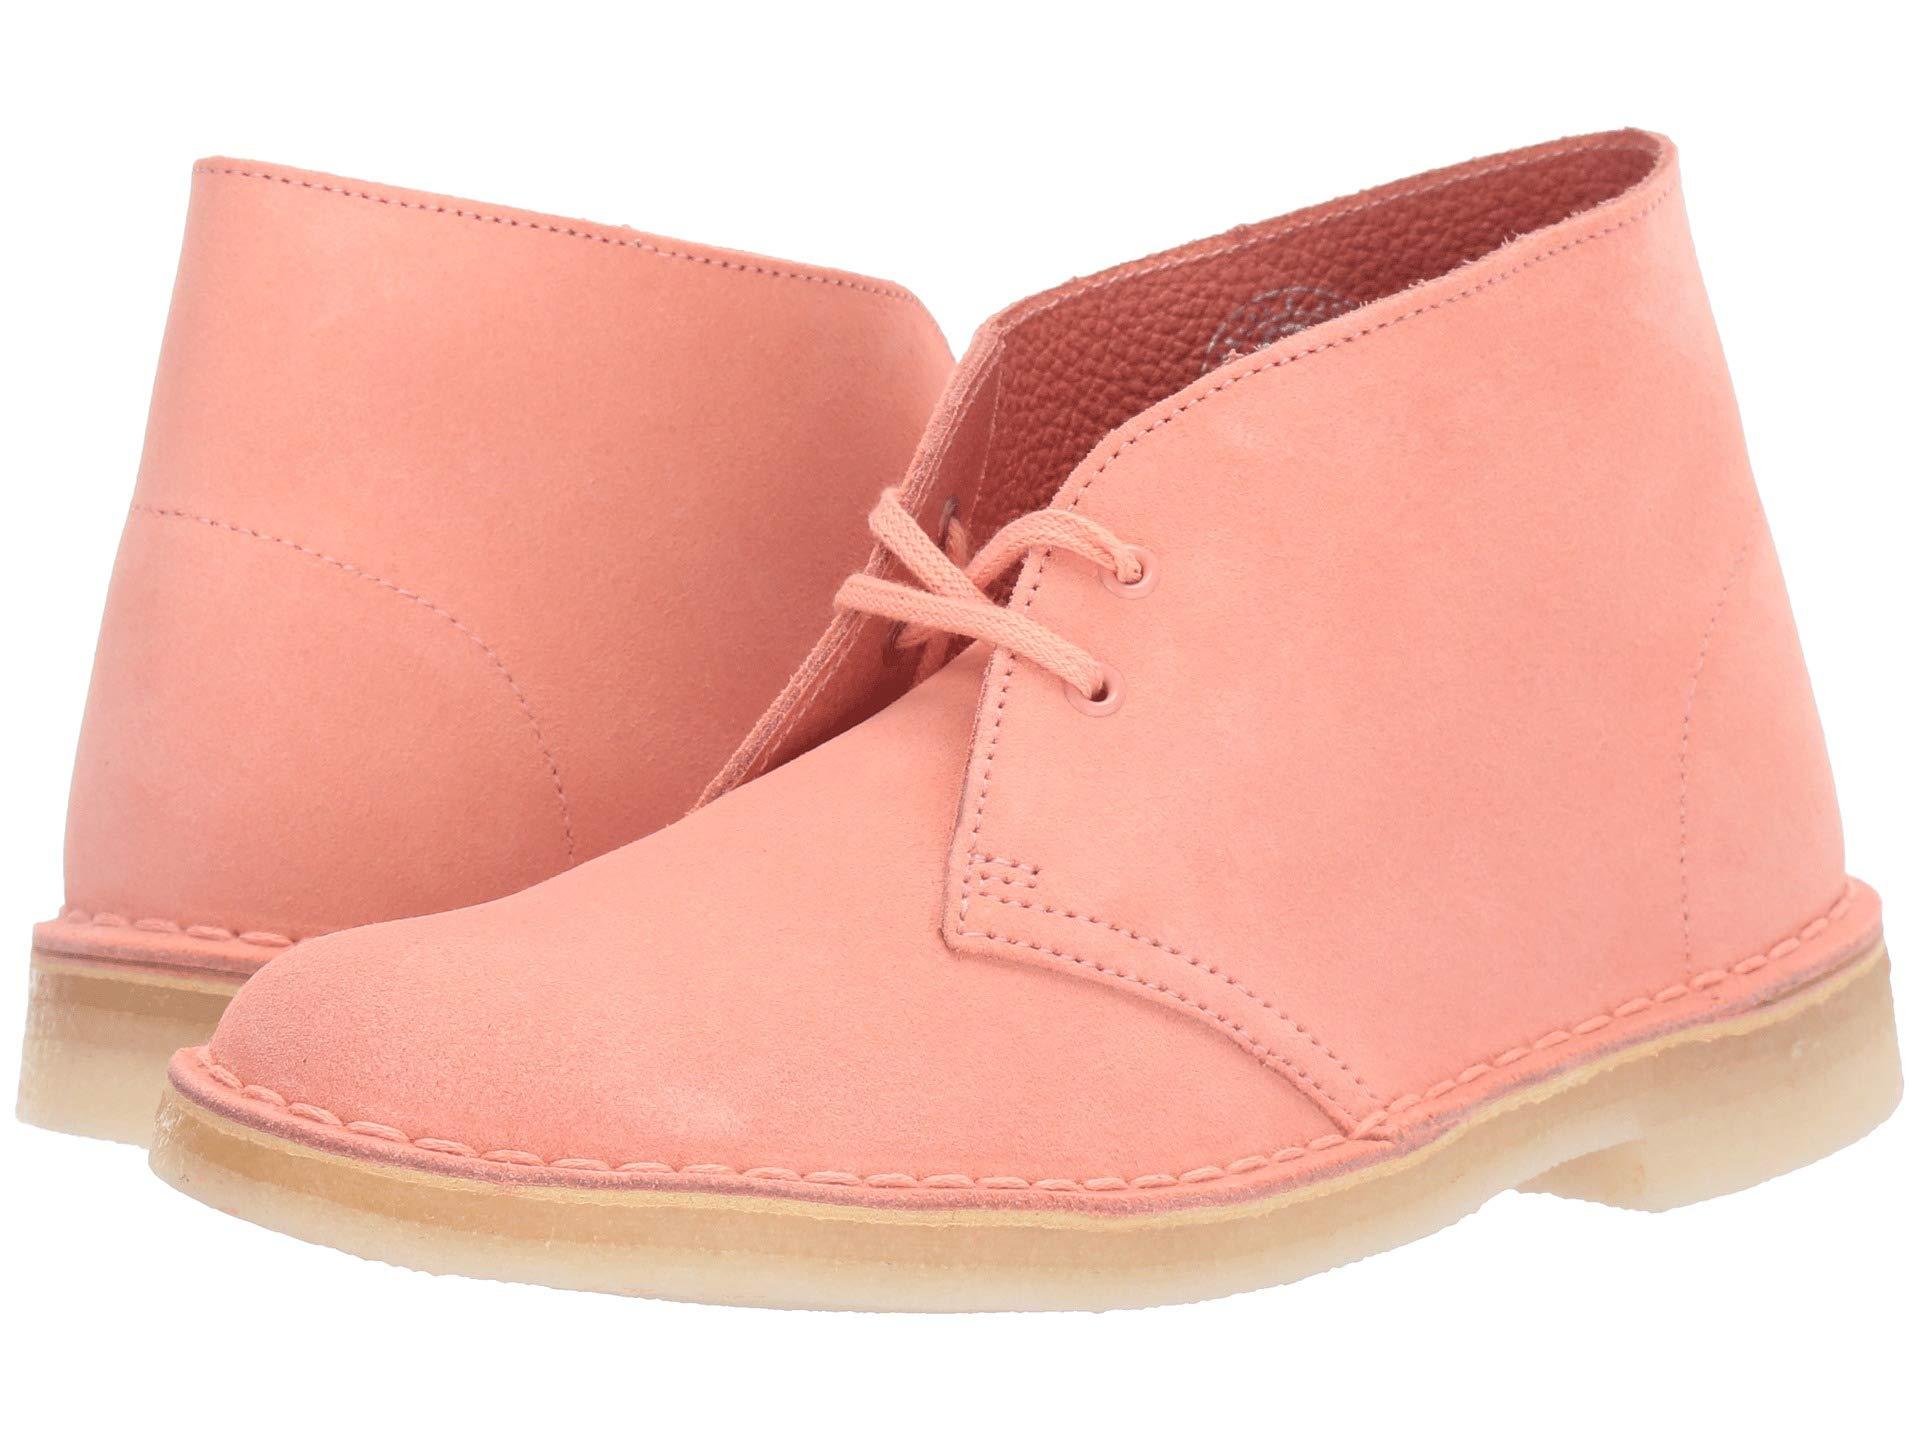 Clarks Desert Boots pink